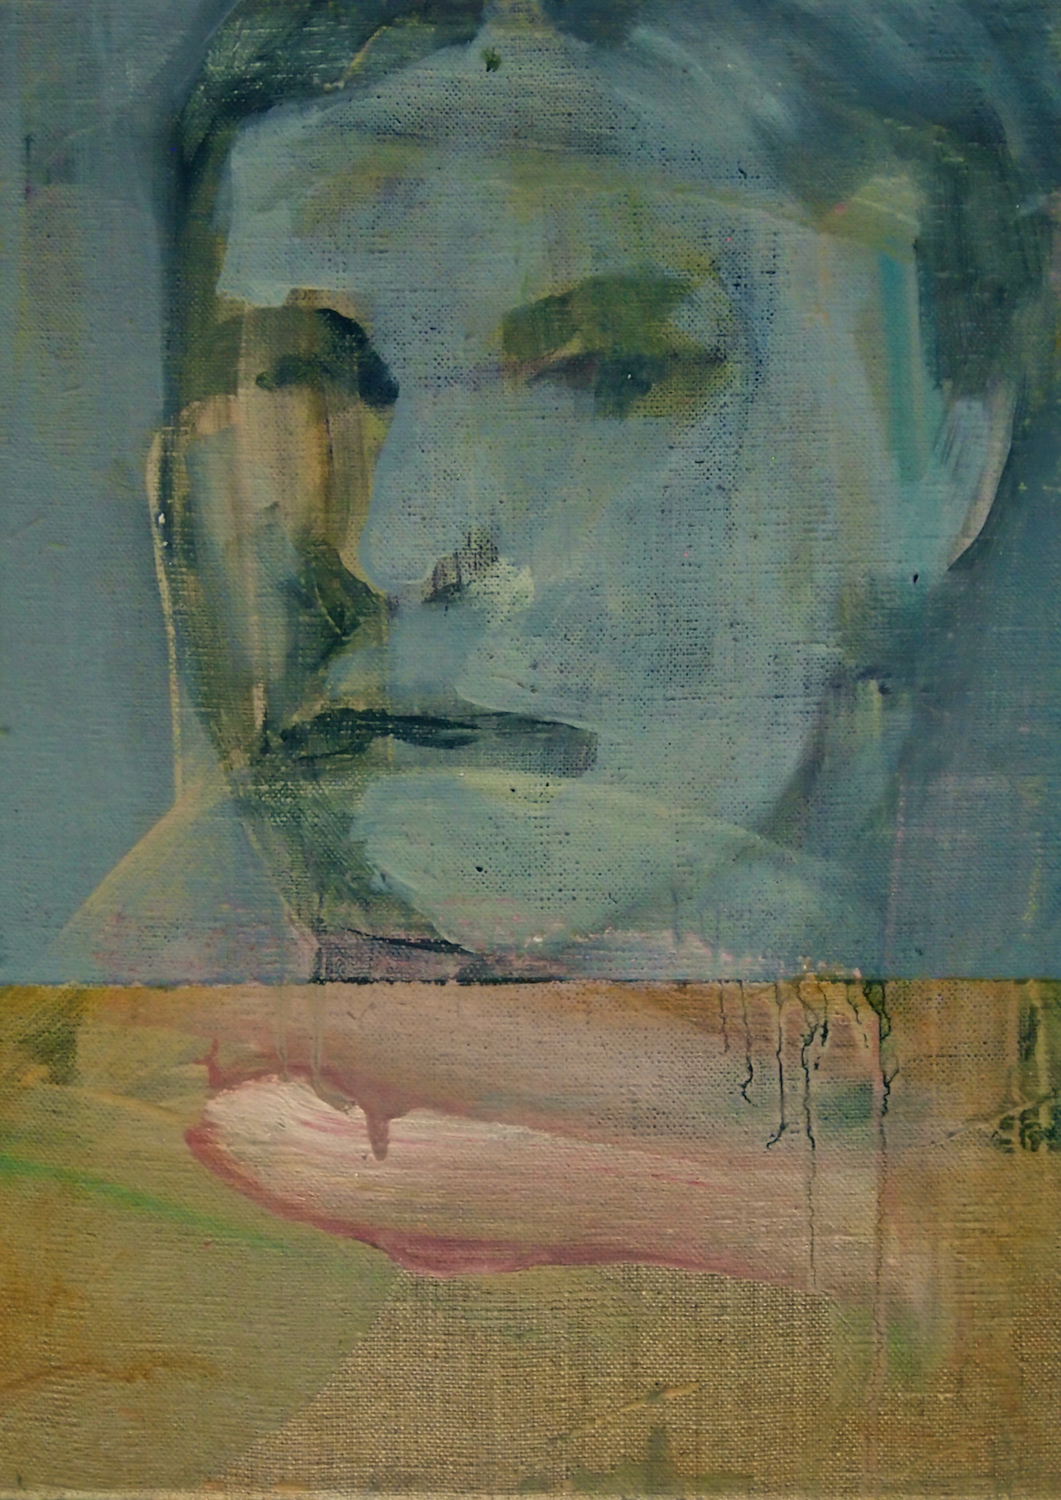 'Officium', Paul Mowat, Oil on linen, 50 x 40 cm